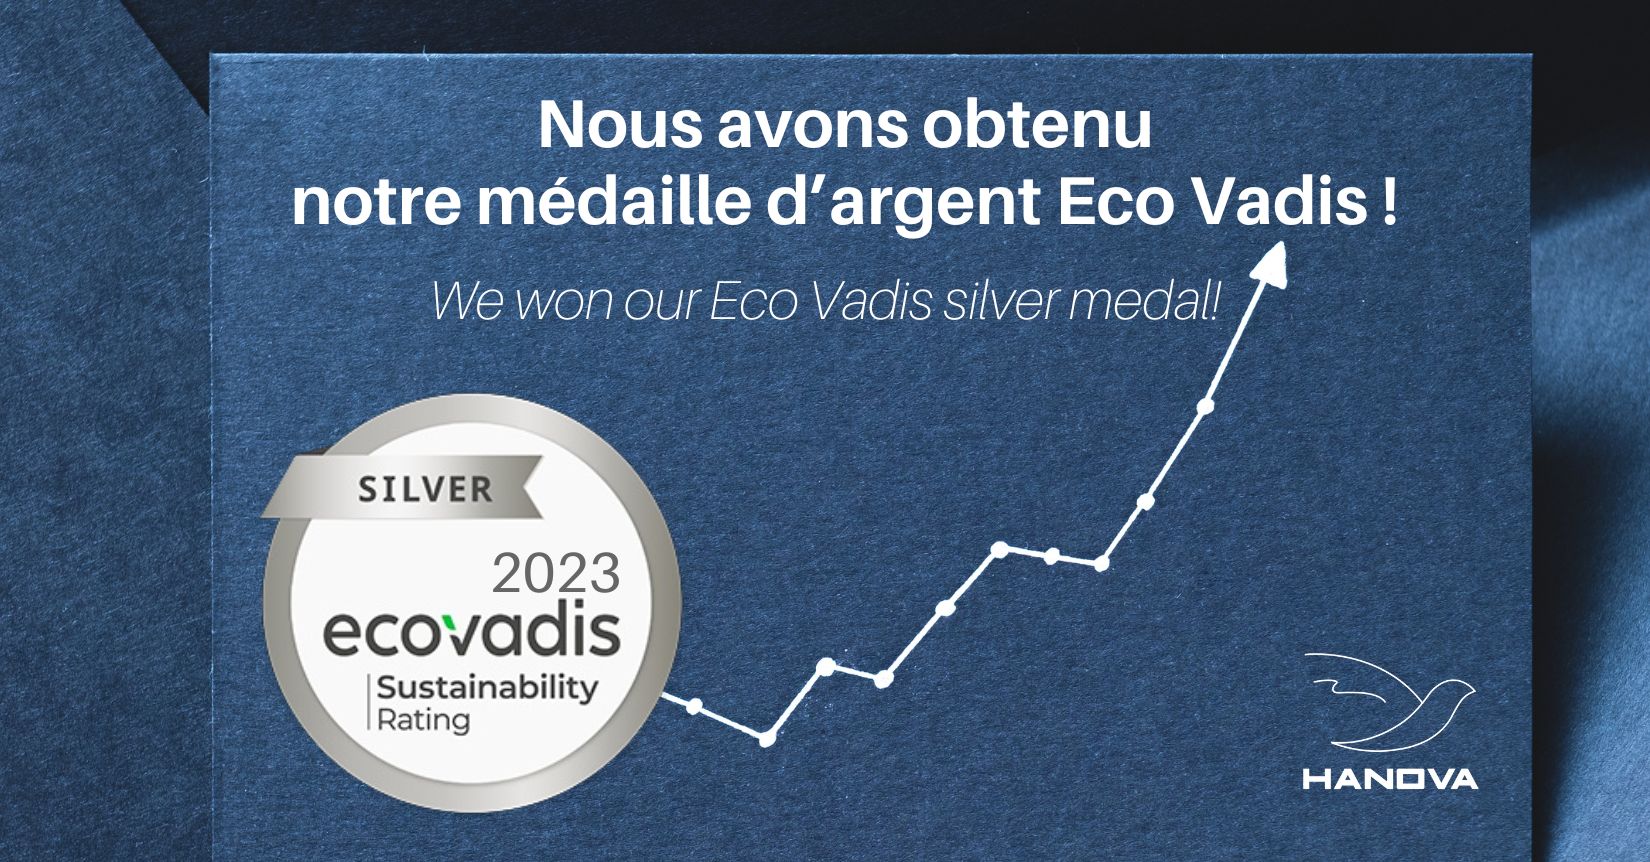 Nous sommes fiers de vous annoncer que nous avons obtenu la médaille d'argent Eco Vadis pour notre performance RSE, grâce à notre Ingénieur.